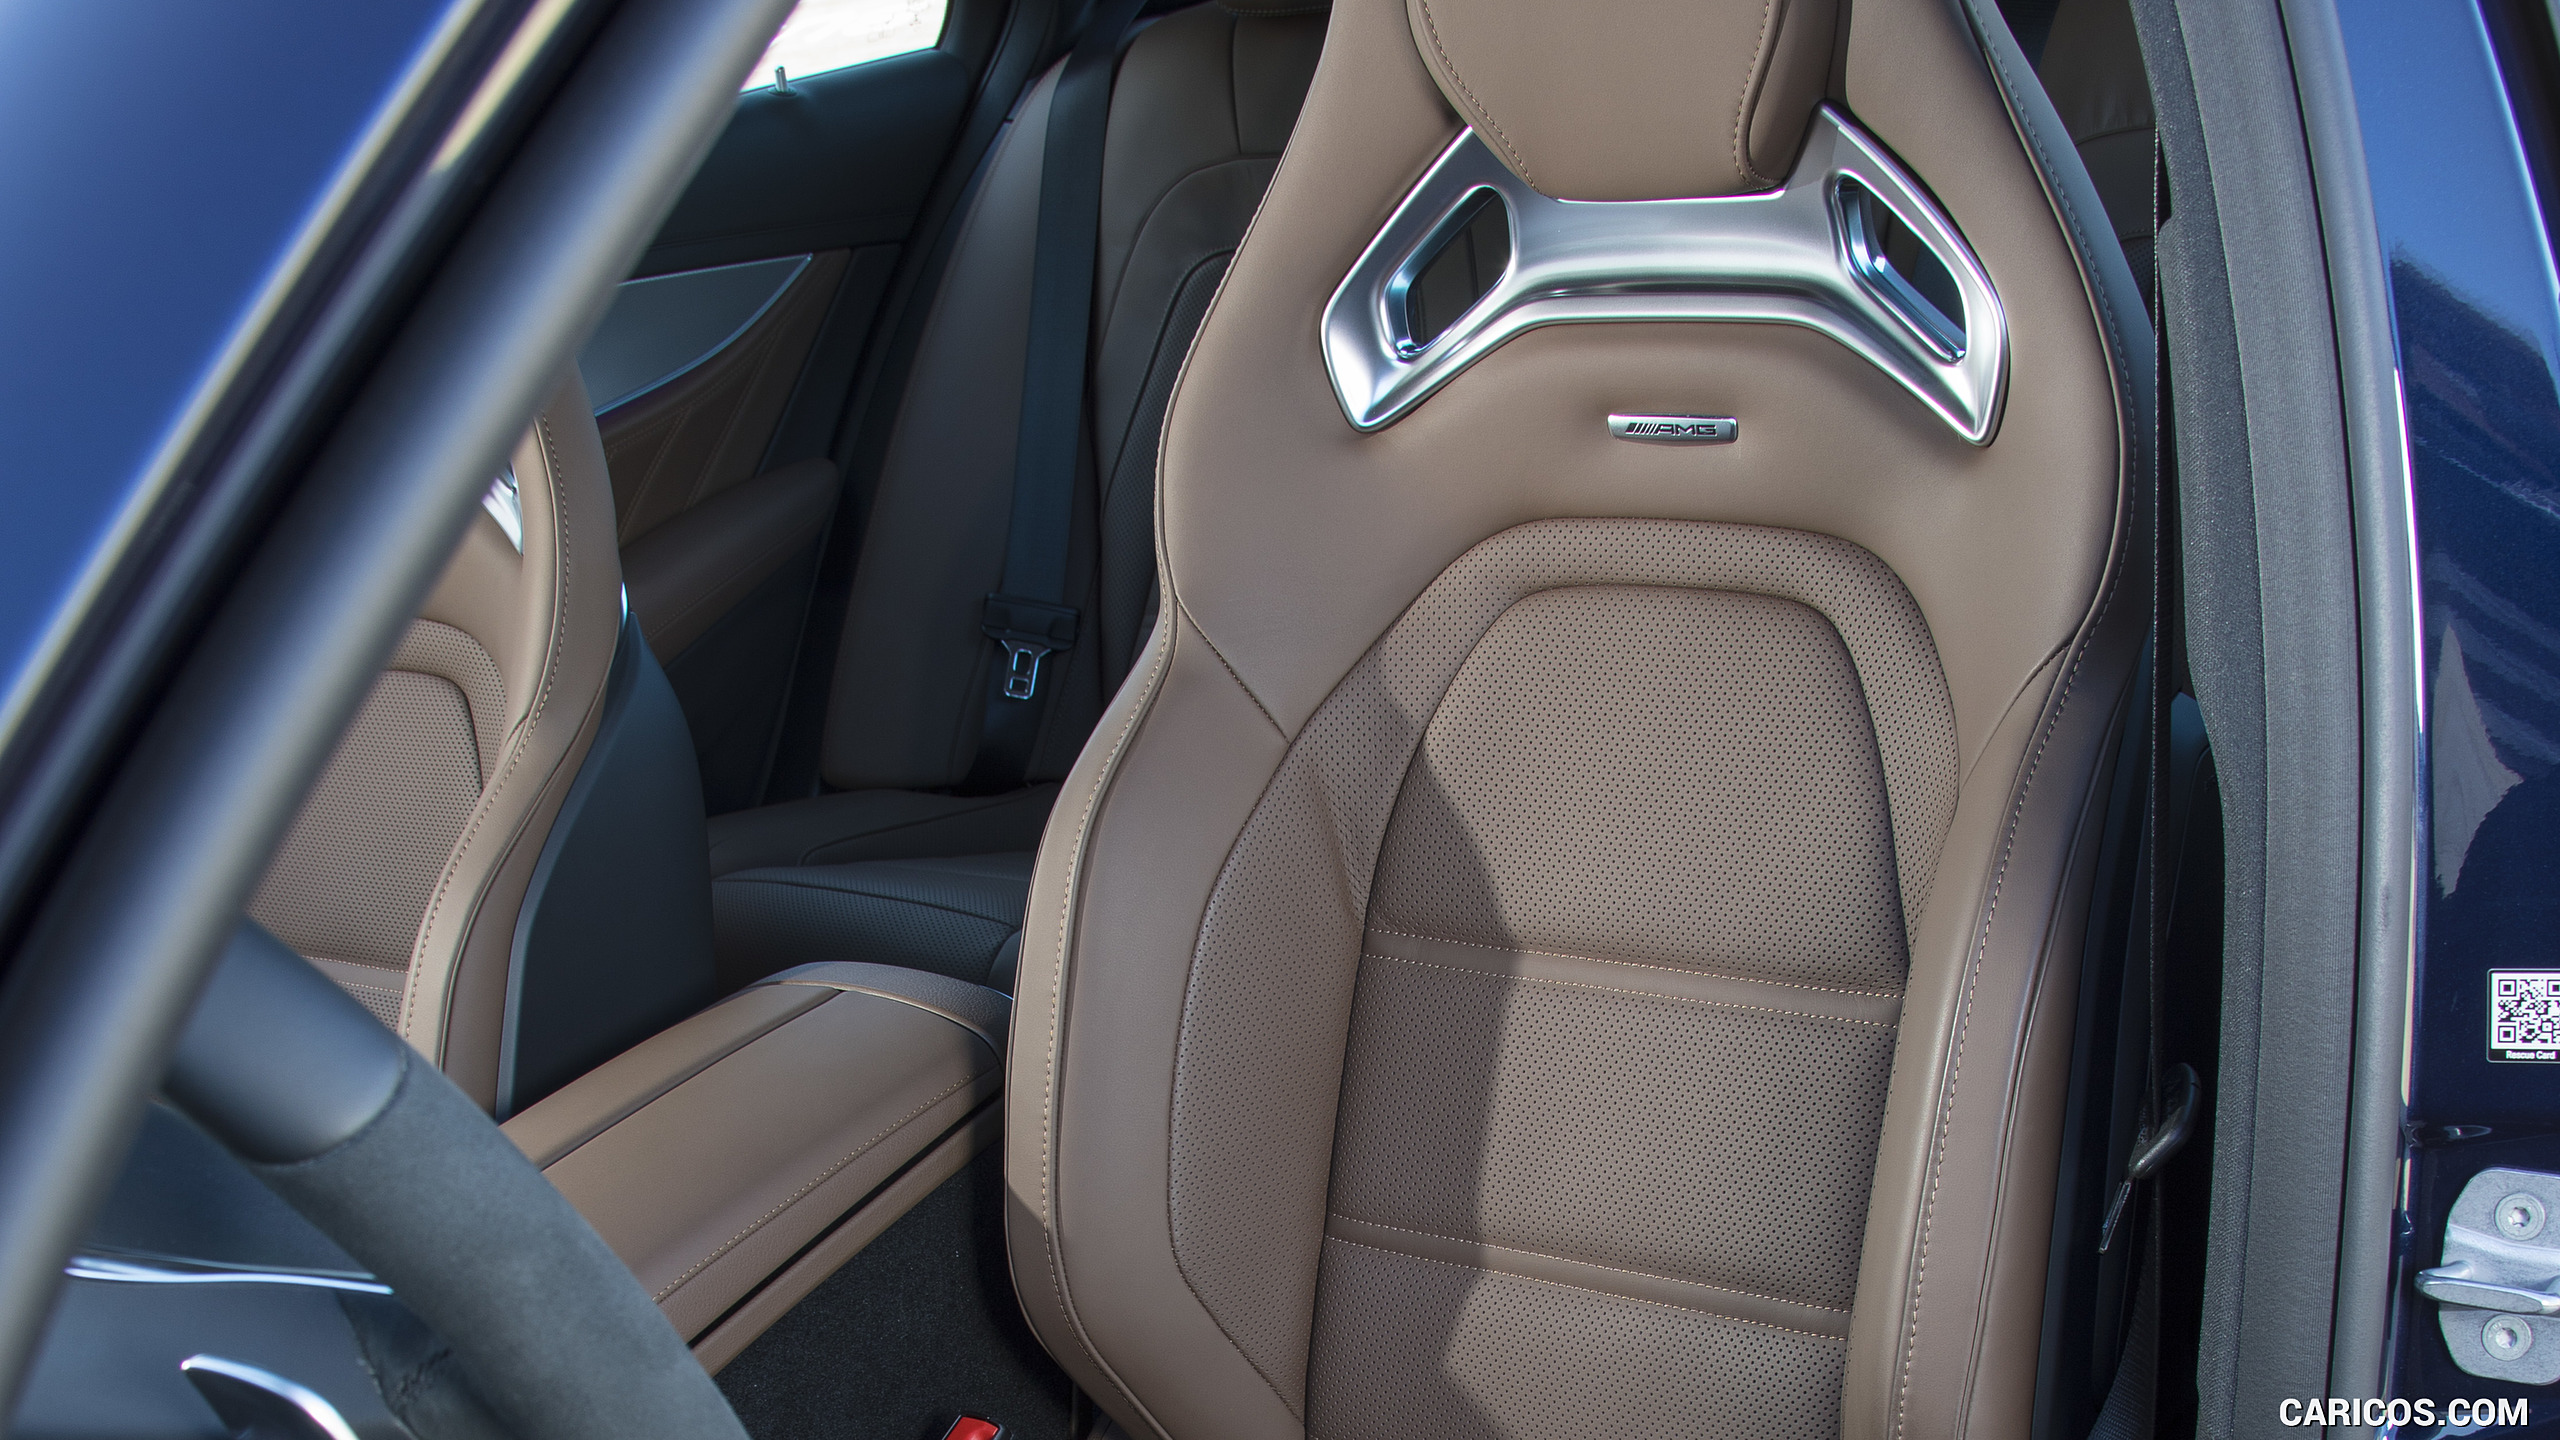 2018 Mercedes-AMG E63 S 4MATIC+ - Interior, Seats, #228 of 323